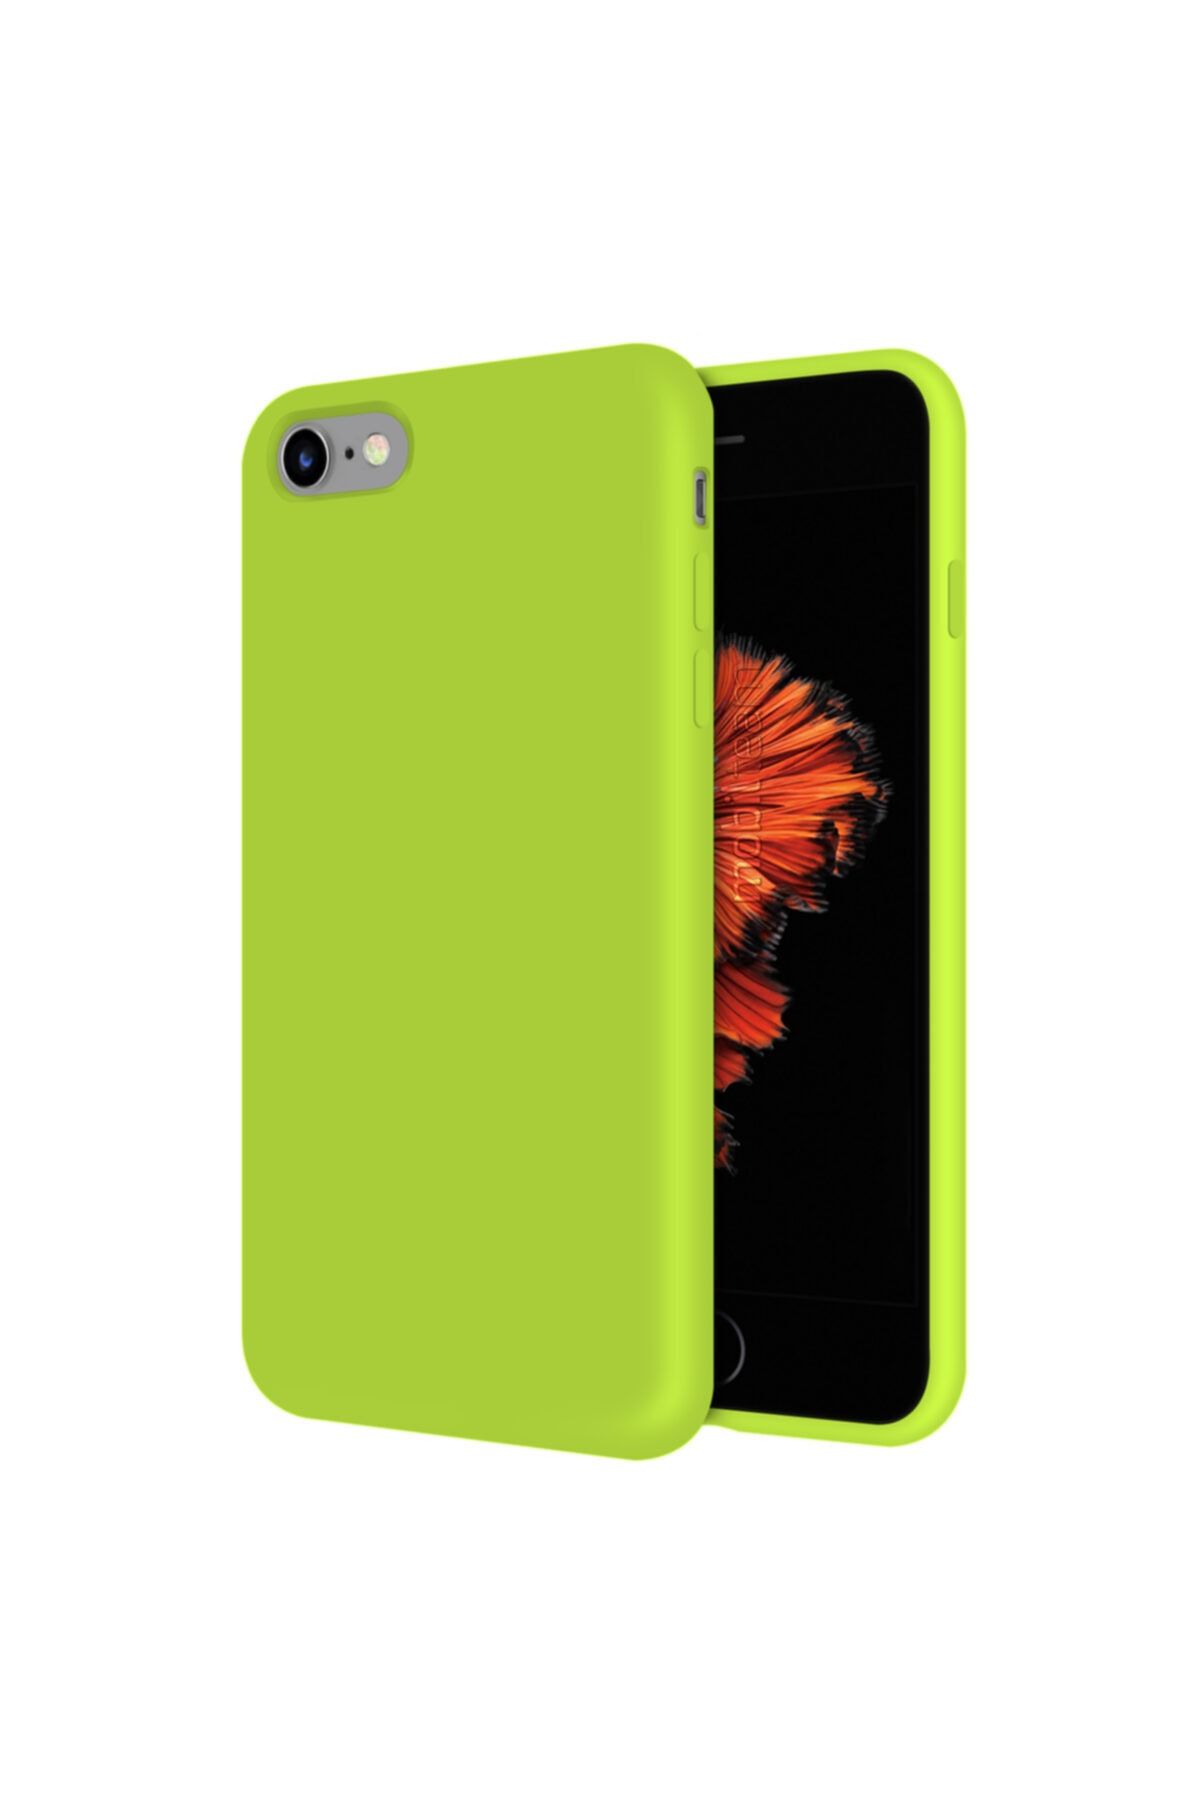 Mobilteam Apple Iphone 6s Kılıf Içi Kadife Lansman Kapak - Neon Sarı